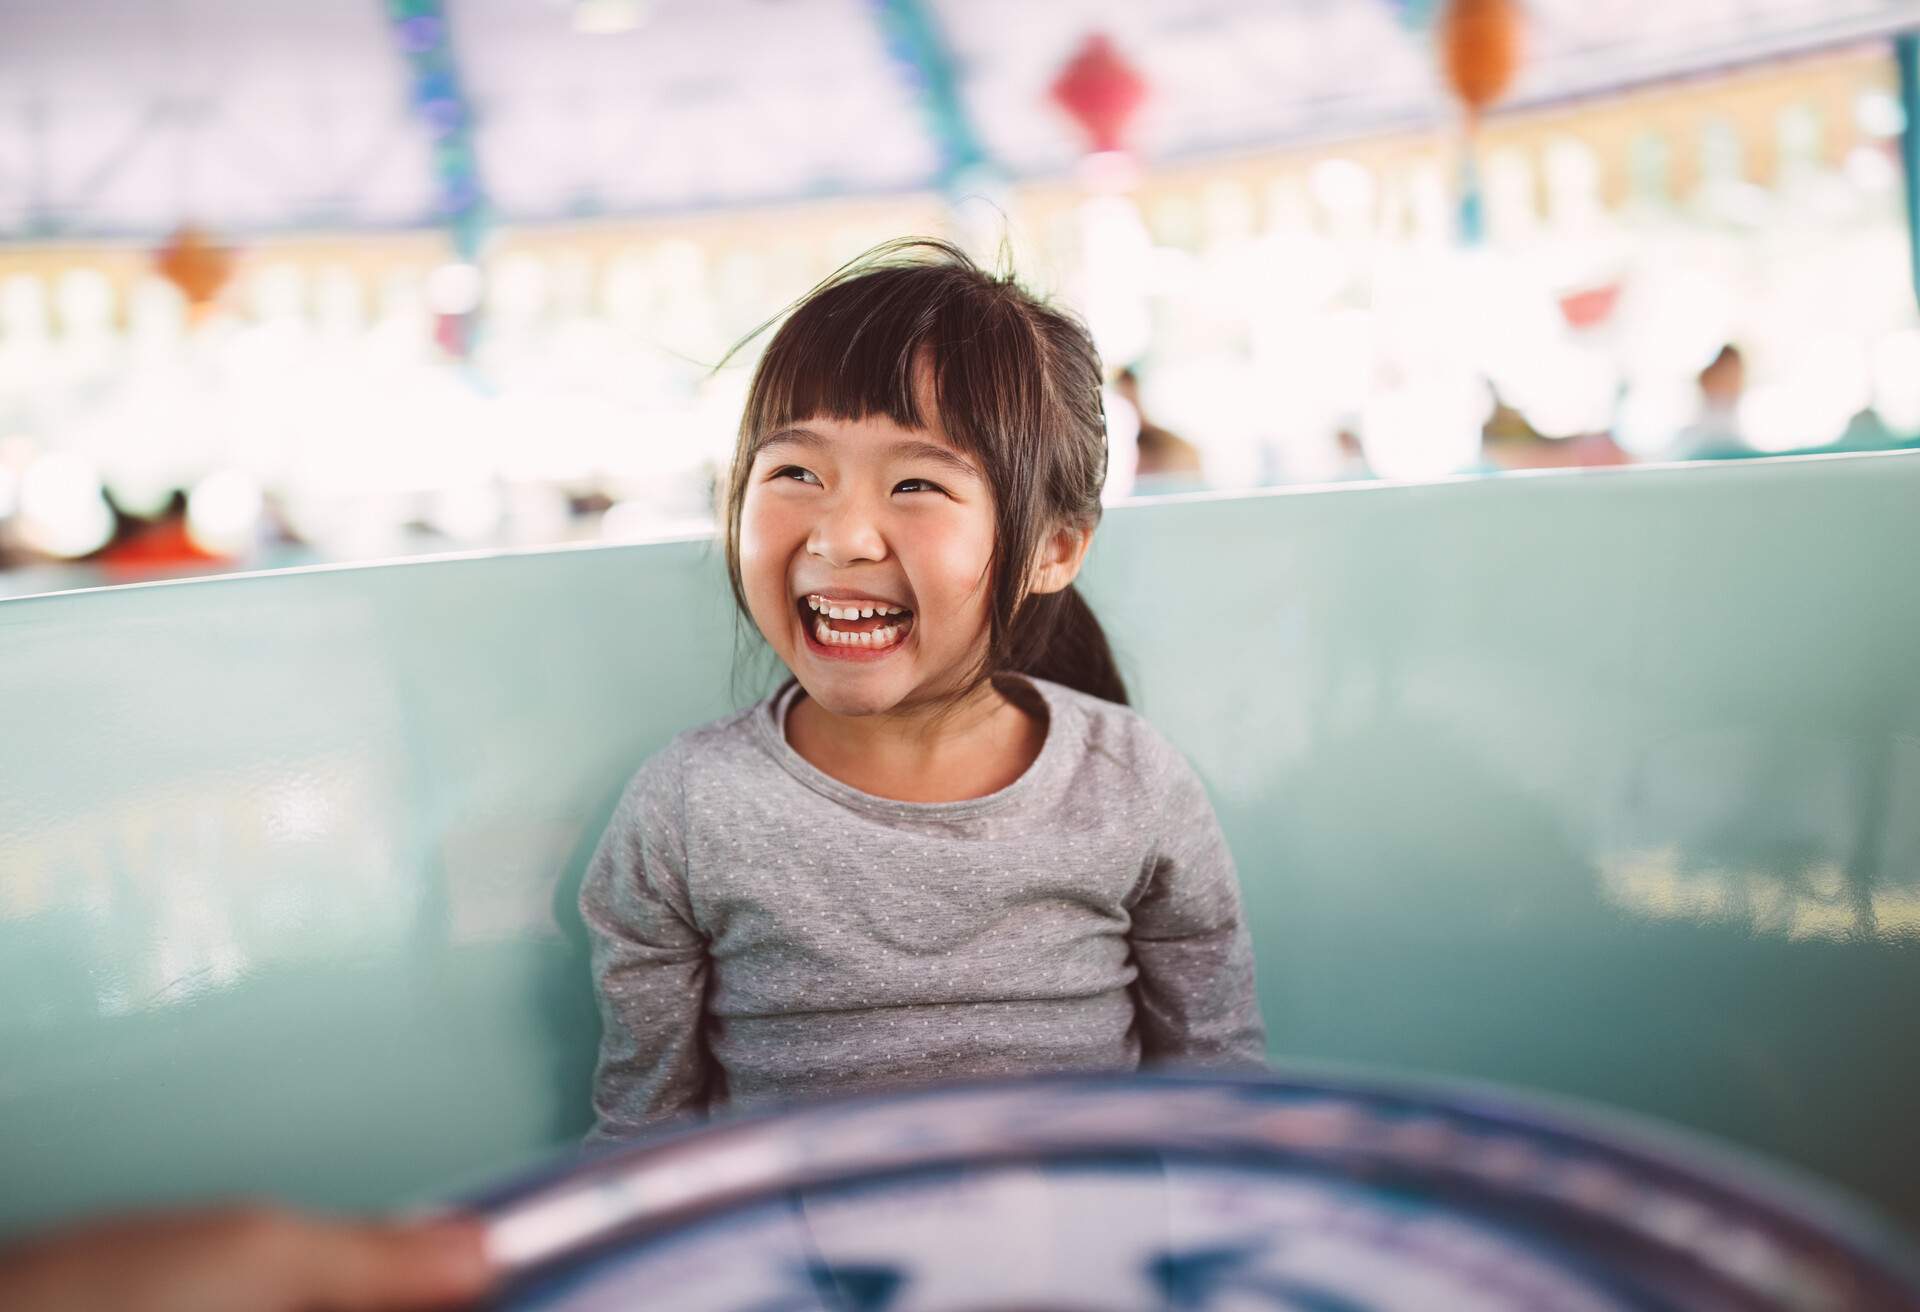 Lovely little girl riding on the amusement park ride joyfully.